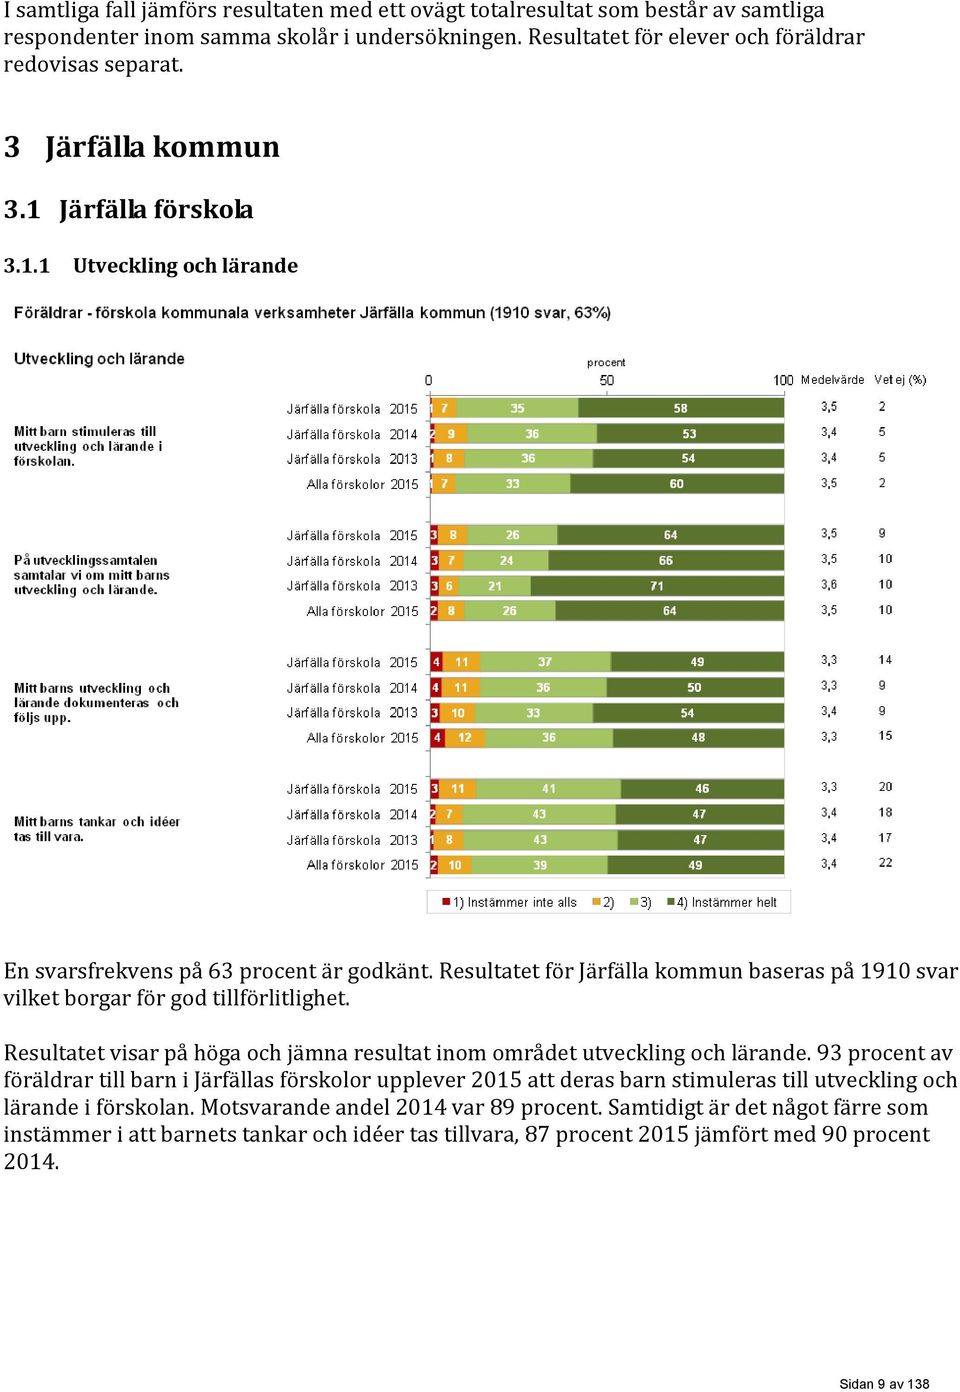 Resultatet för Järfälla kommun baseras på 1910 svar vilket borgar för god tillförlitlighet. Resultatet visar på höga och jämna resultat inom området utveckling och lärande.